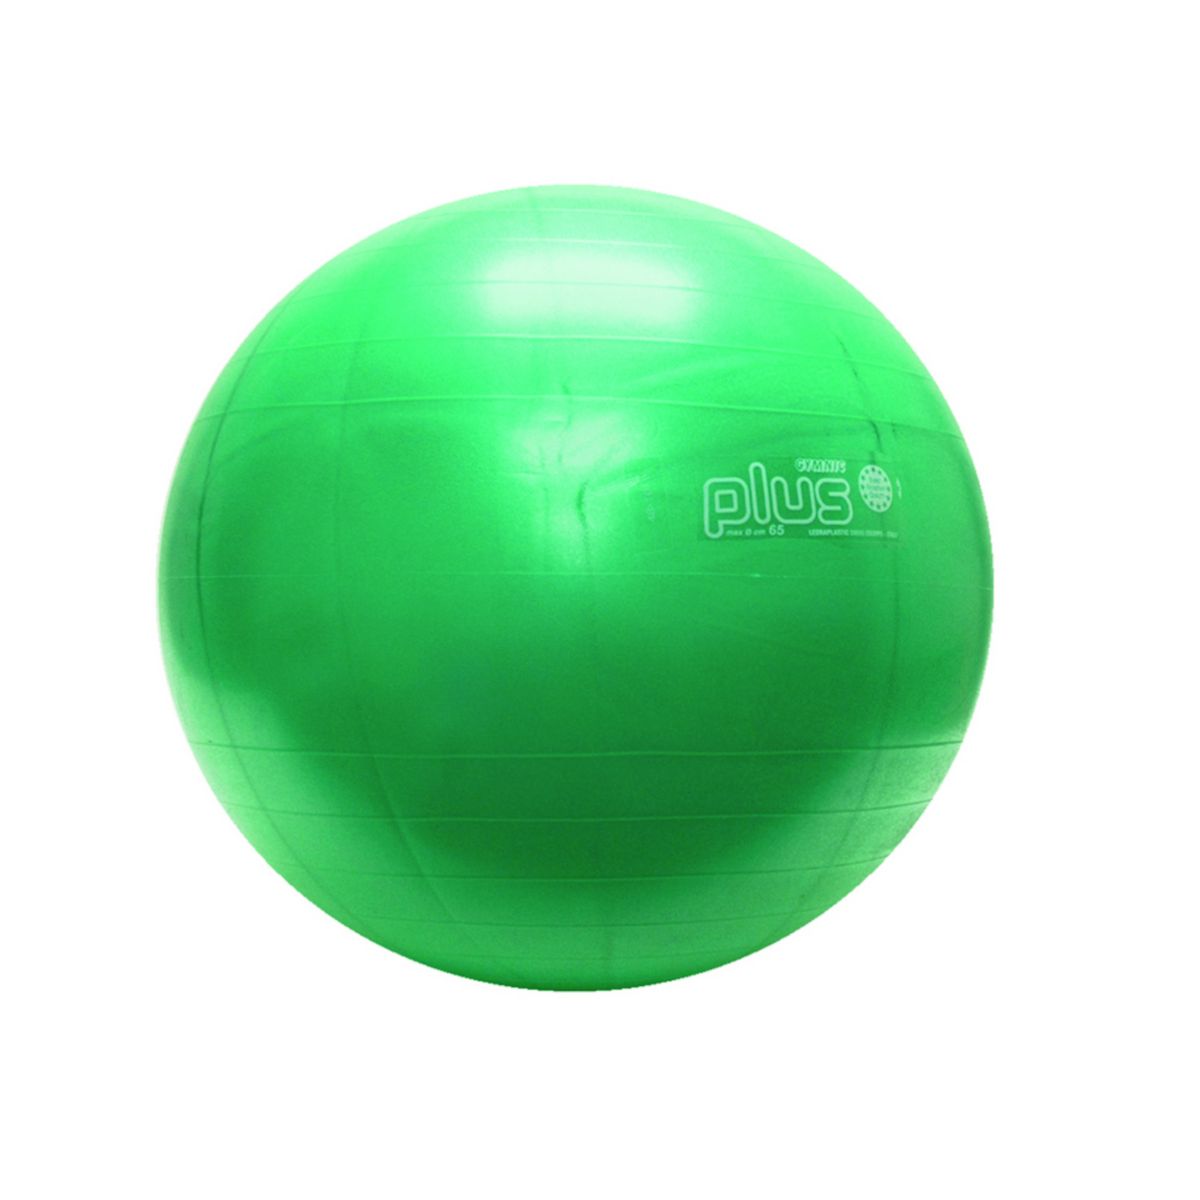 Physiogymnic 30-1702 Надувной мяч для упражнений, 26 дюймов, зеленый Physiogymnic